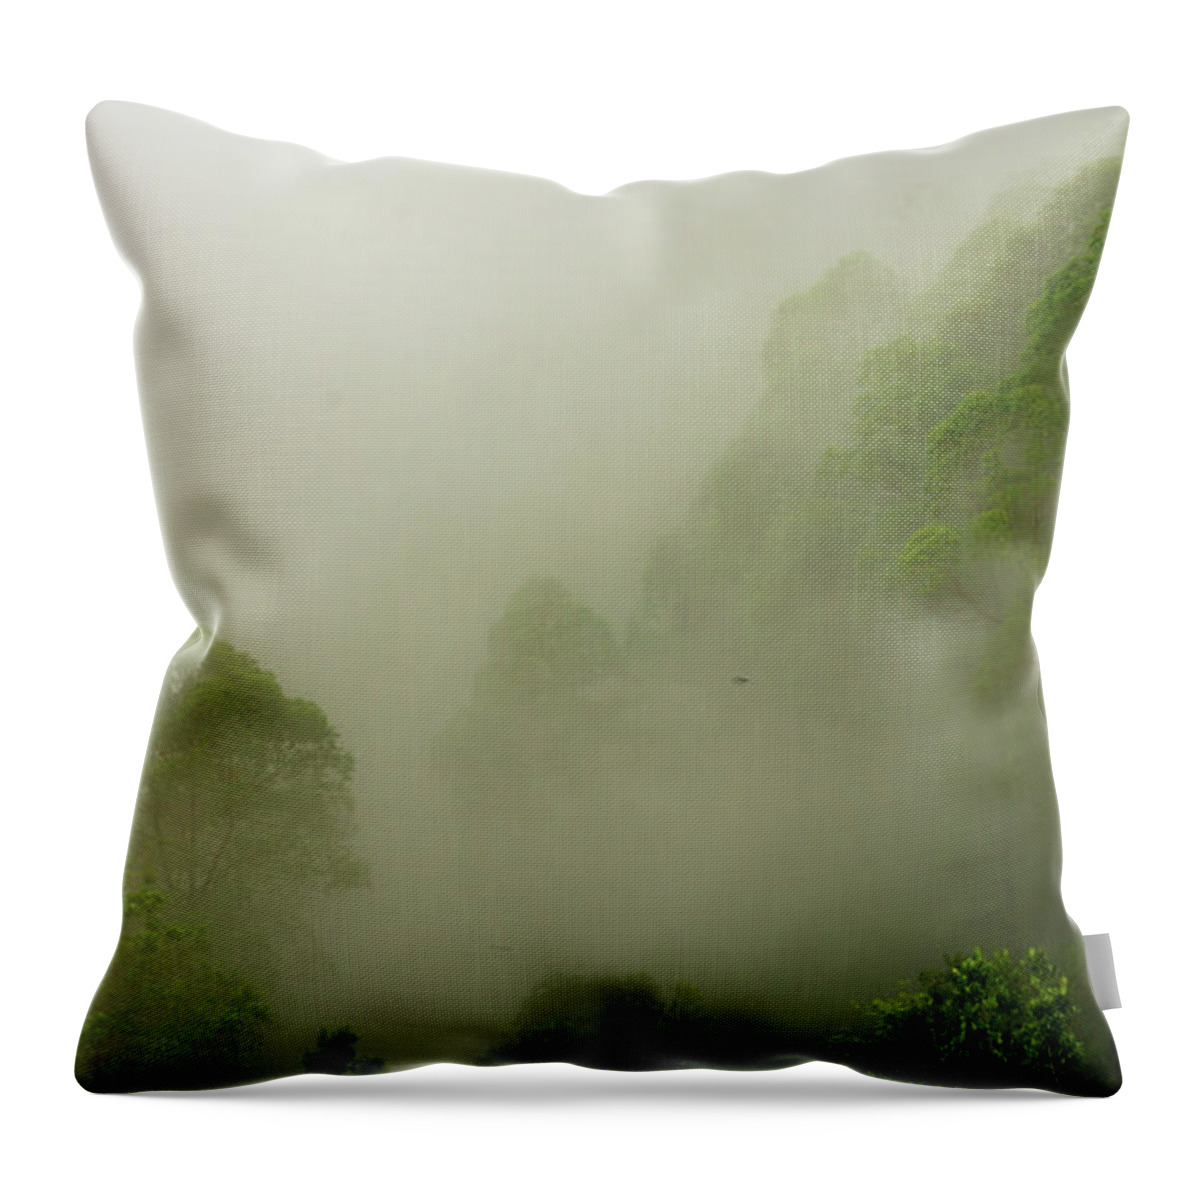 Mist Throw Pillow featuring the photograph The Mist by Ngurah Agus